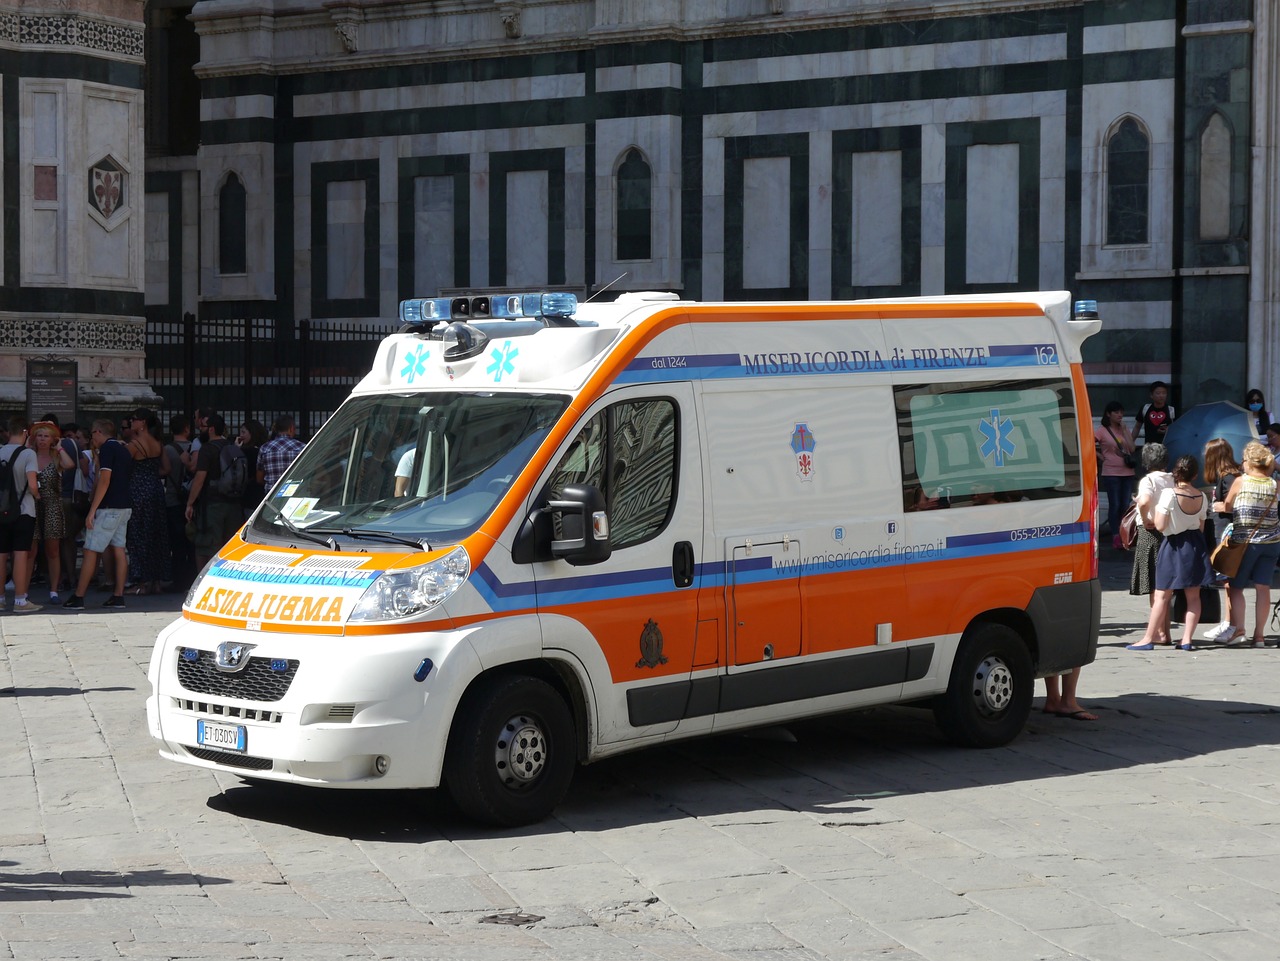 Un rumano residente en Italia fue encontrado en su casa con una herida en el cuello causada por un flexo. La policía cree que se suicidó, pero no descarta el asesinato.